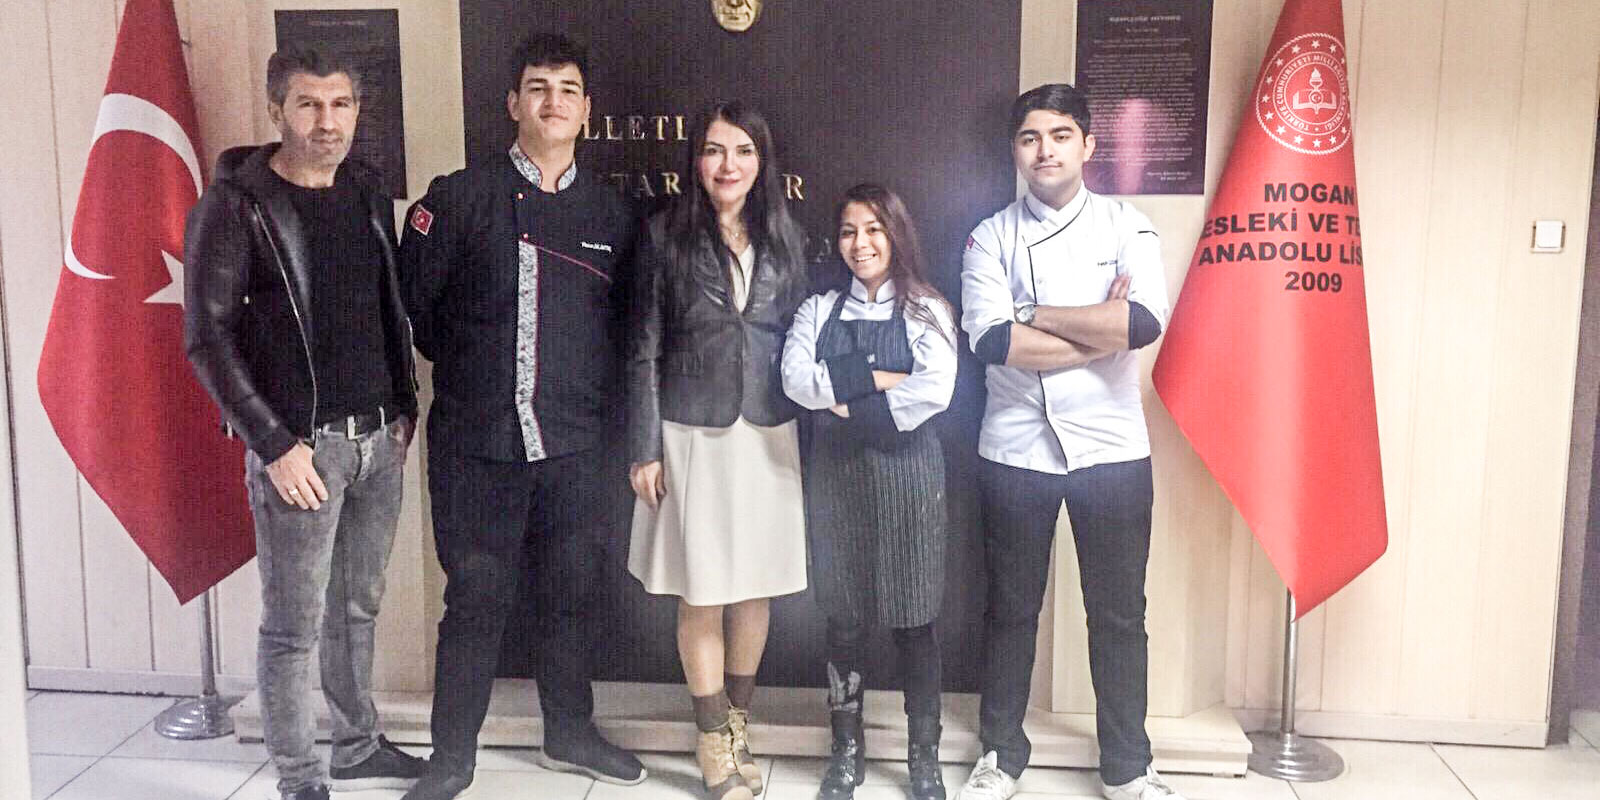 Mogan Mesleki Teknik Anadolu Lisesi Gastronomi Festivali Yemek Yarışması’na 3 öğrenci ile katıldı